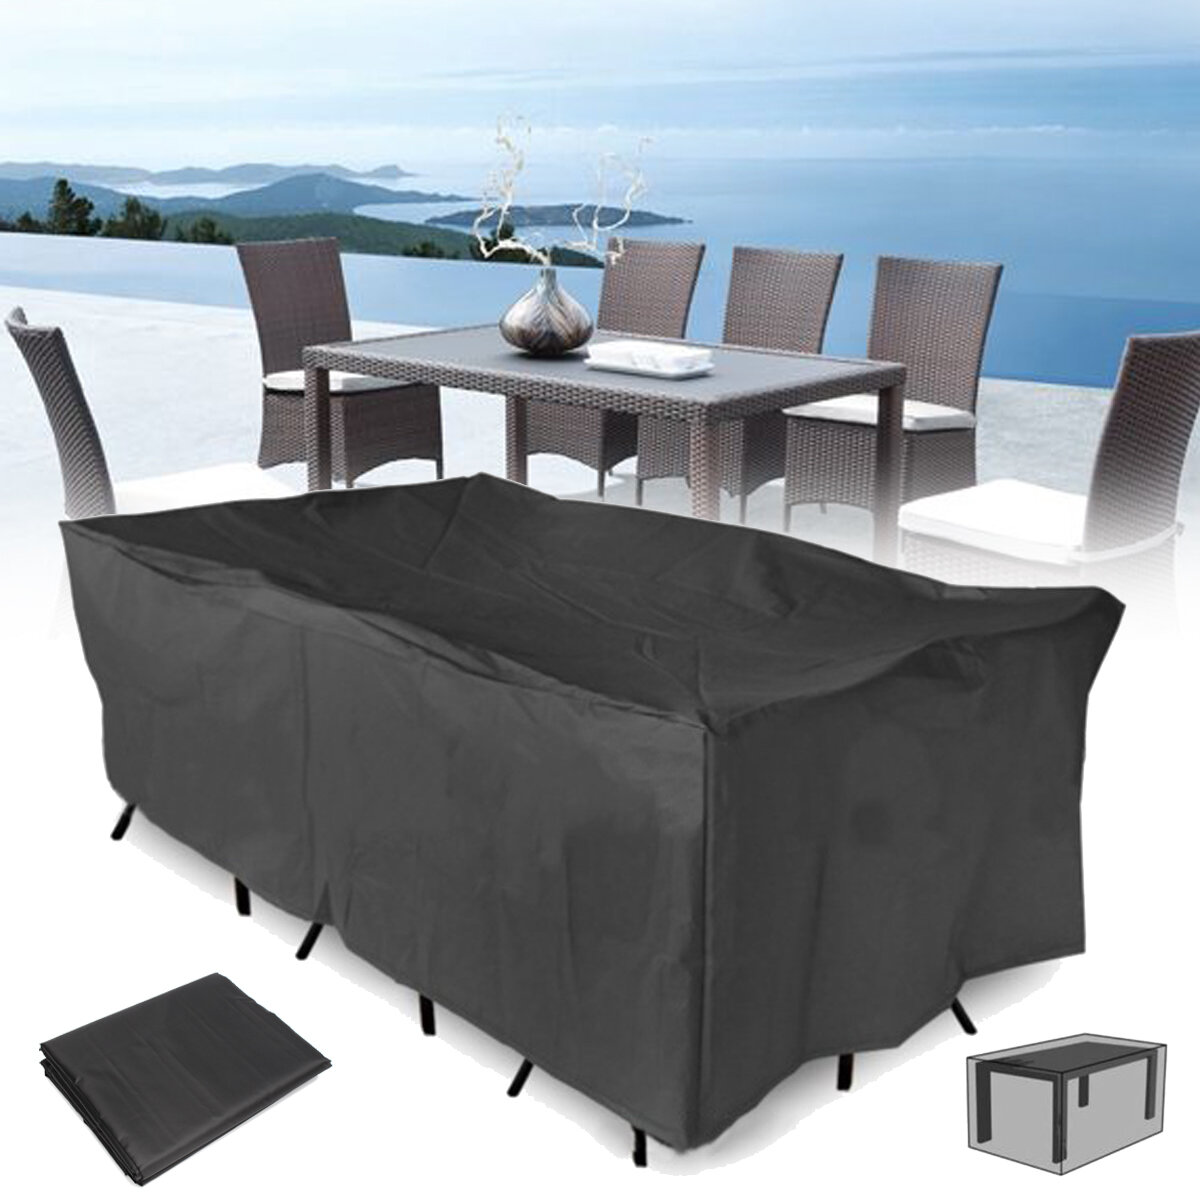 320x220x70cm Outdoor Garten Terrasse Möbel Wasserdicht Staubschutz Tisch Stuhl Sun Shelter